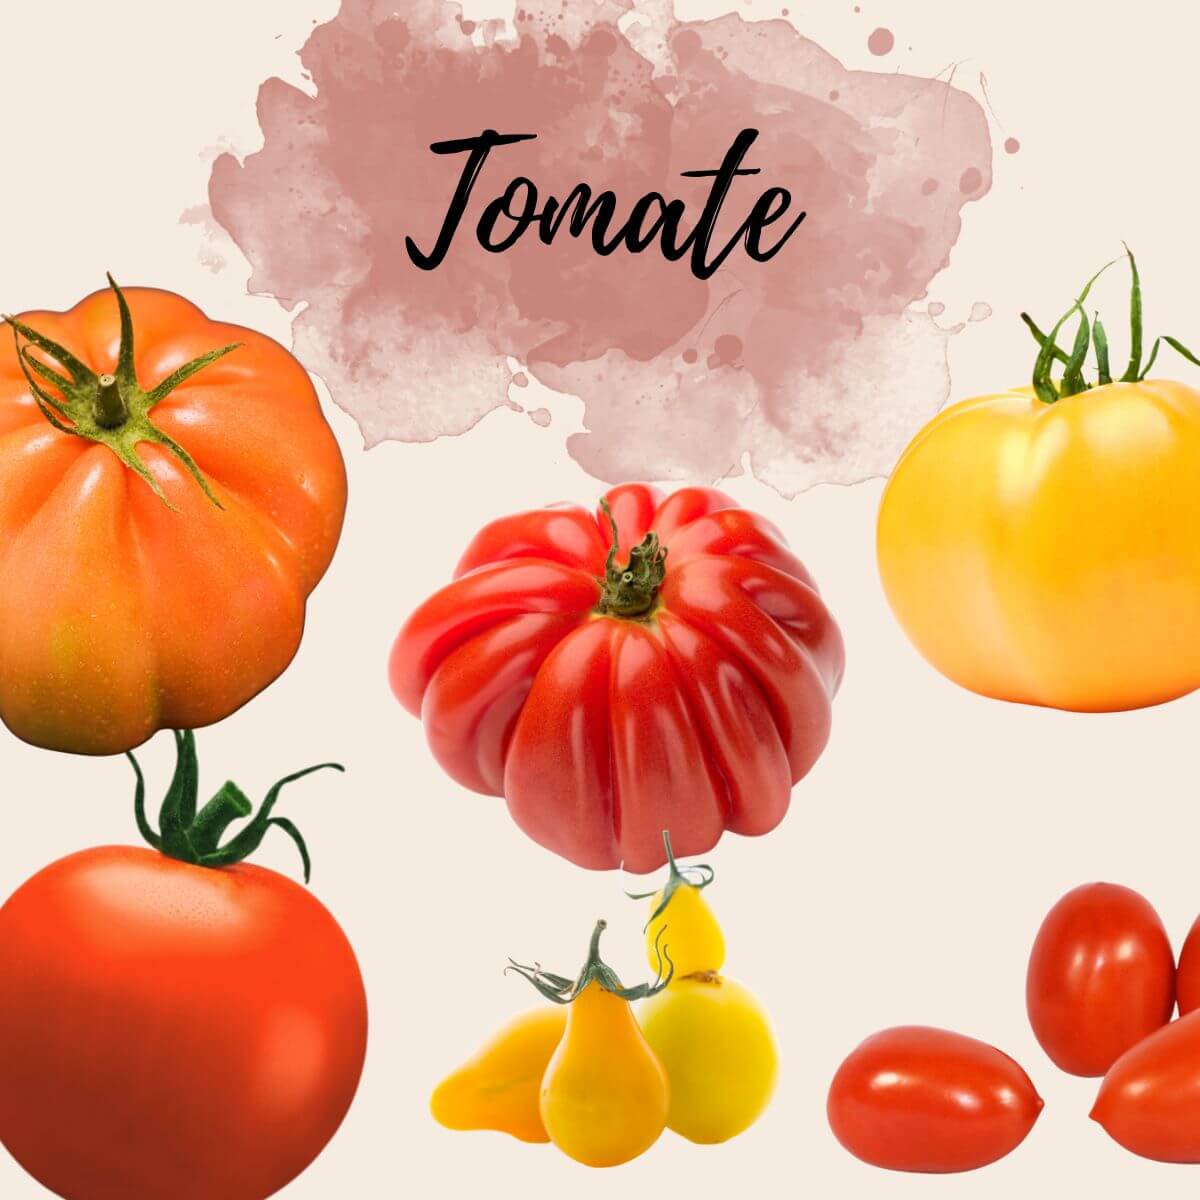 Vergleich verschiedener Tomatensorten: Kleine, gelbe Tomate, rote Cocktailtomate, rote Fleischtomate, große, gelbe Tomate